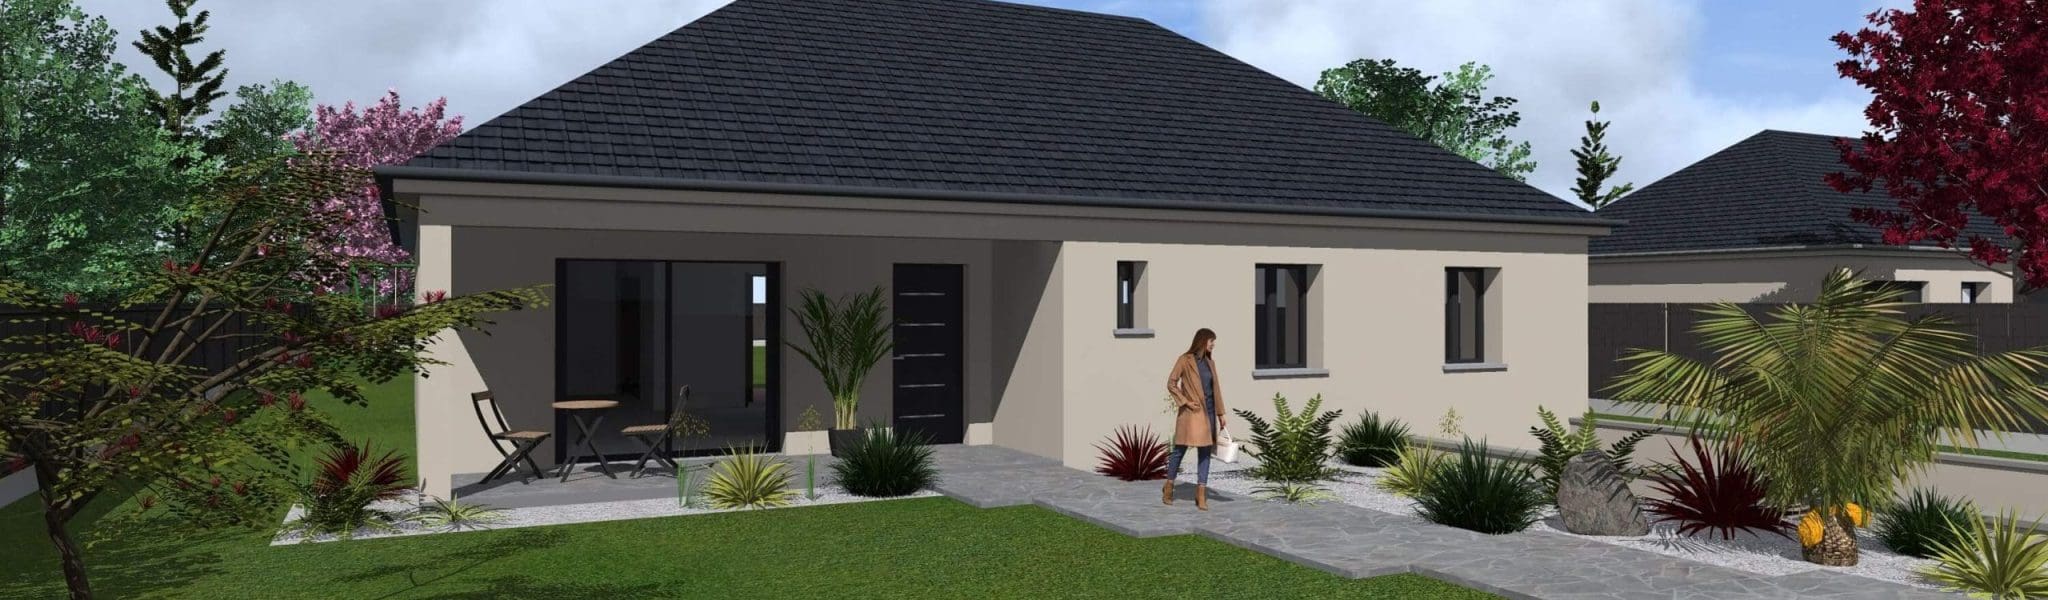 Plan 3D de la maison Olga avec petite terrasse d'exterieur